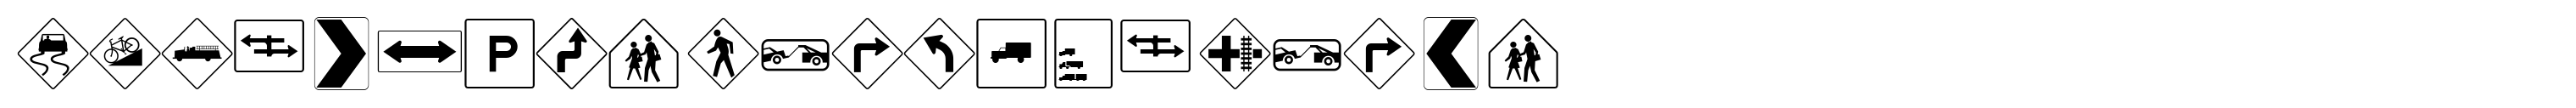 PIXymbols Highway Signs